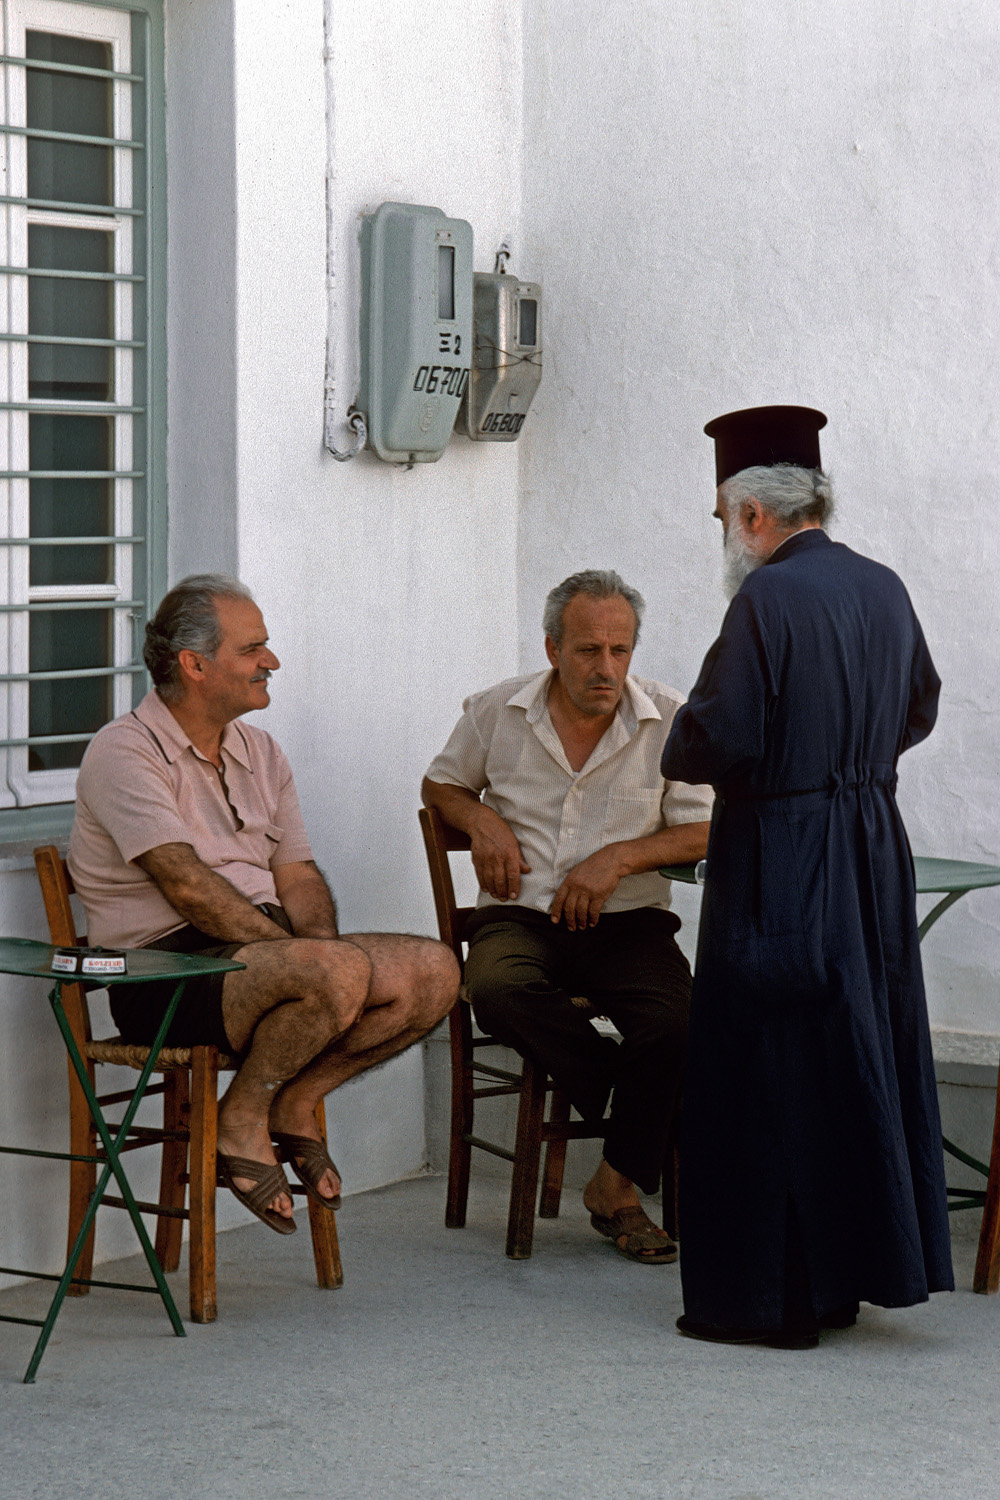 bill-hocker-café-sifnos-greece-1992